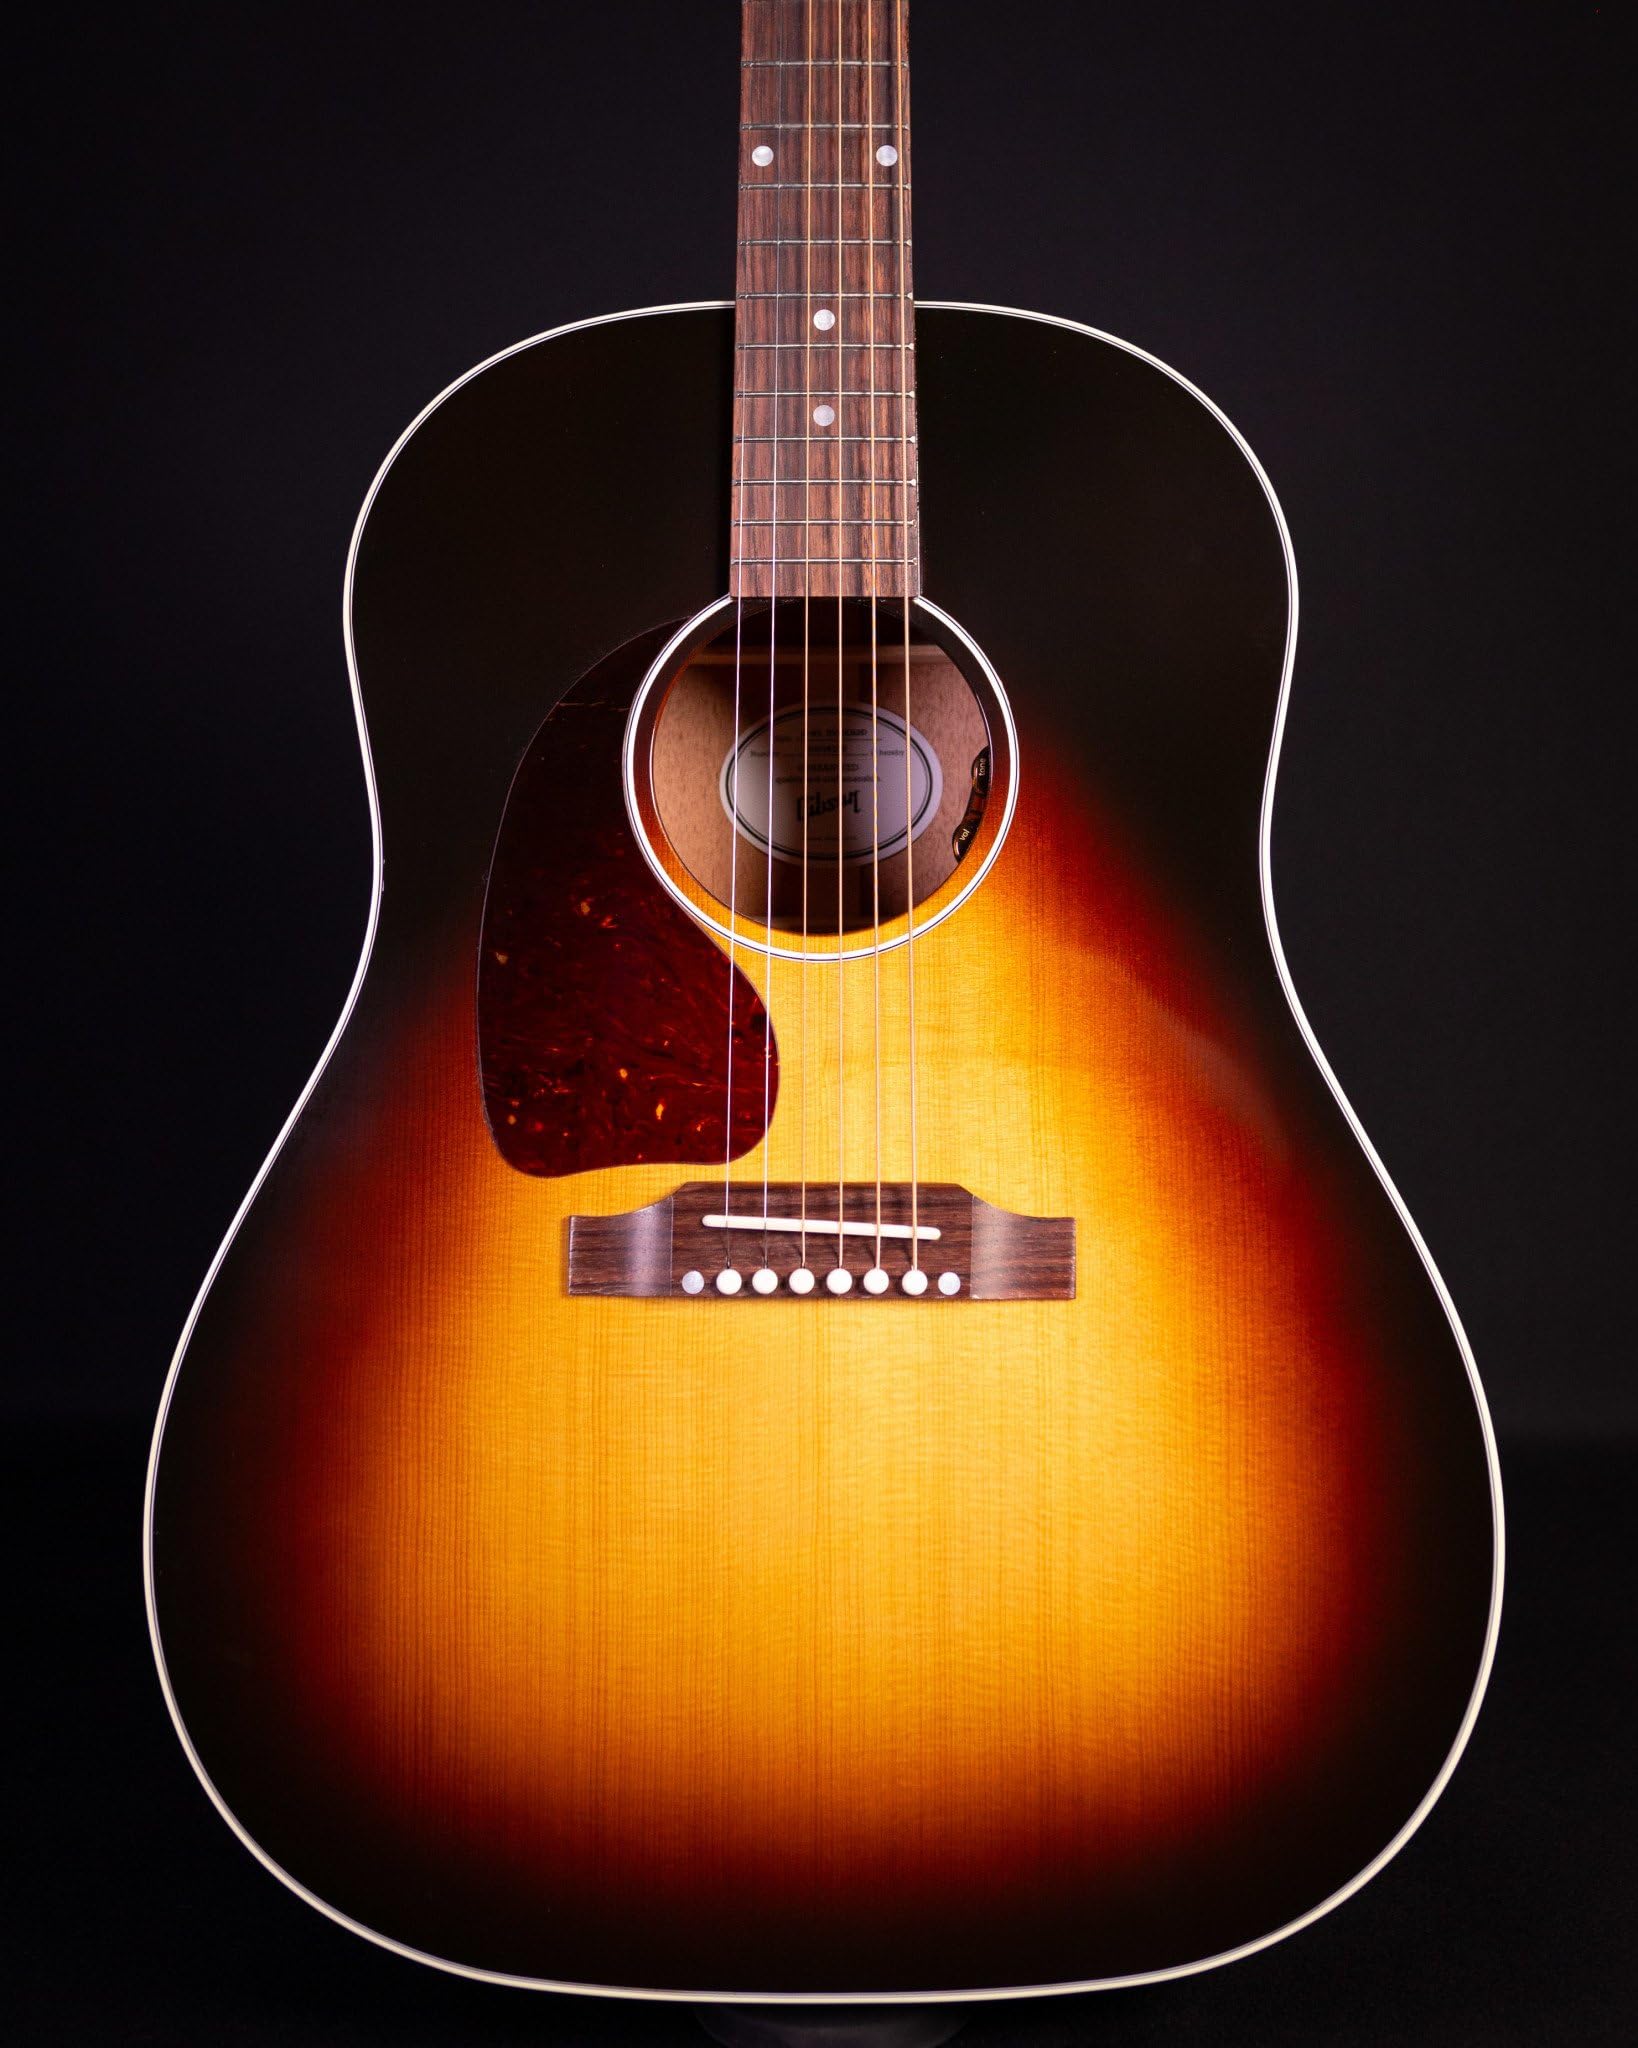 Gibson J-45 Standard Vintage Sunburst Lefthand - Westerngitarre für Linkshänder